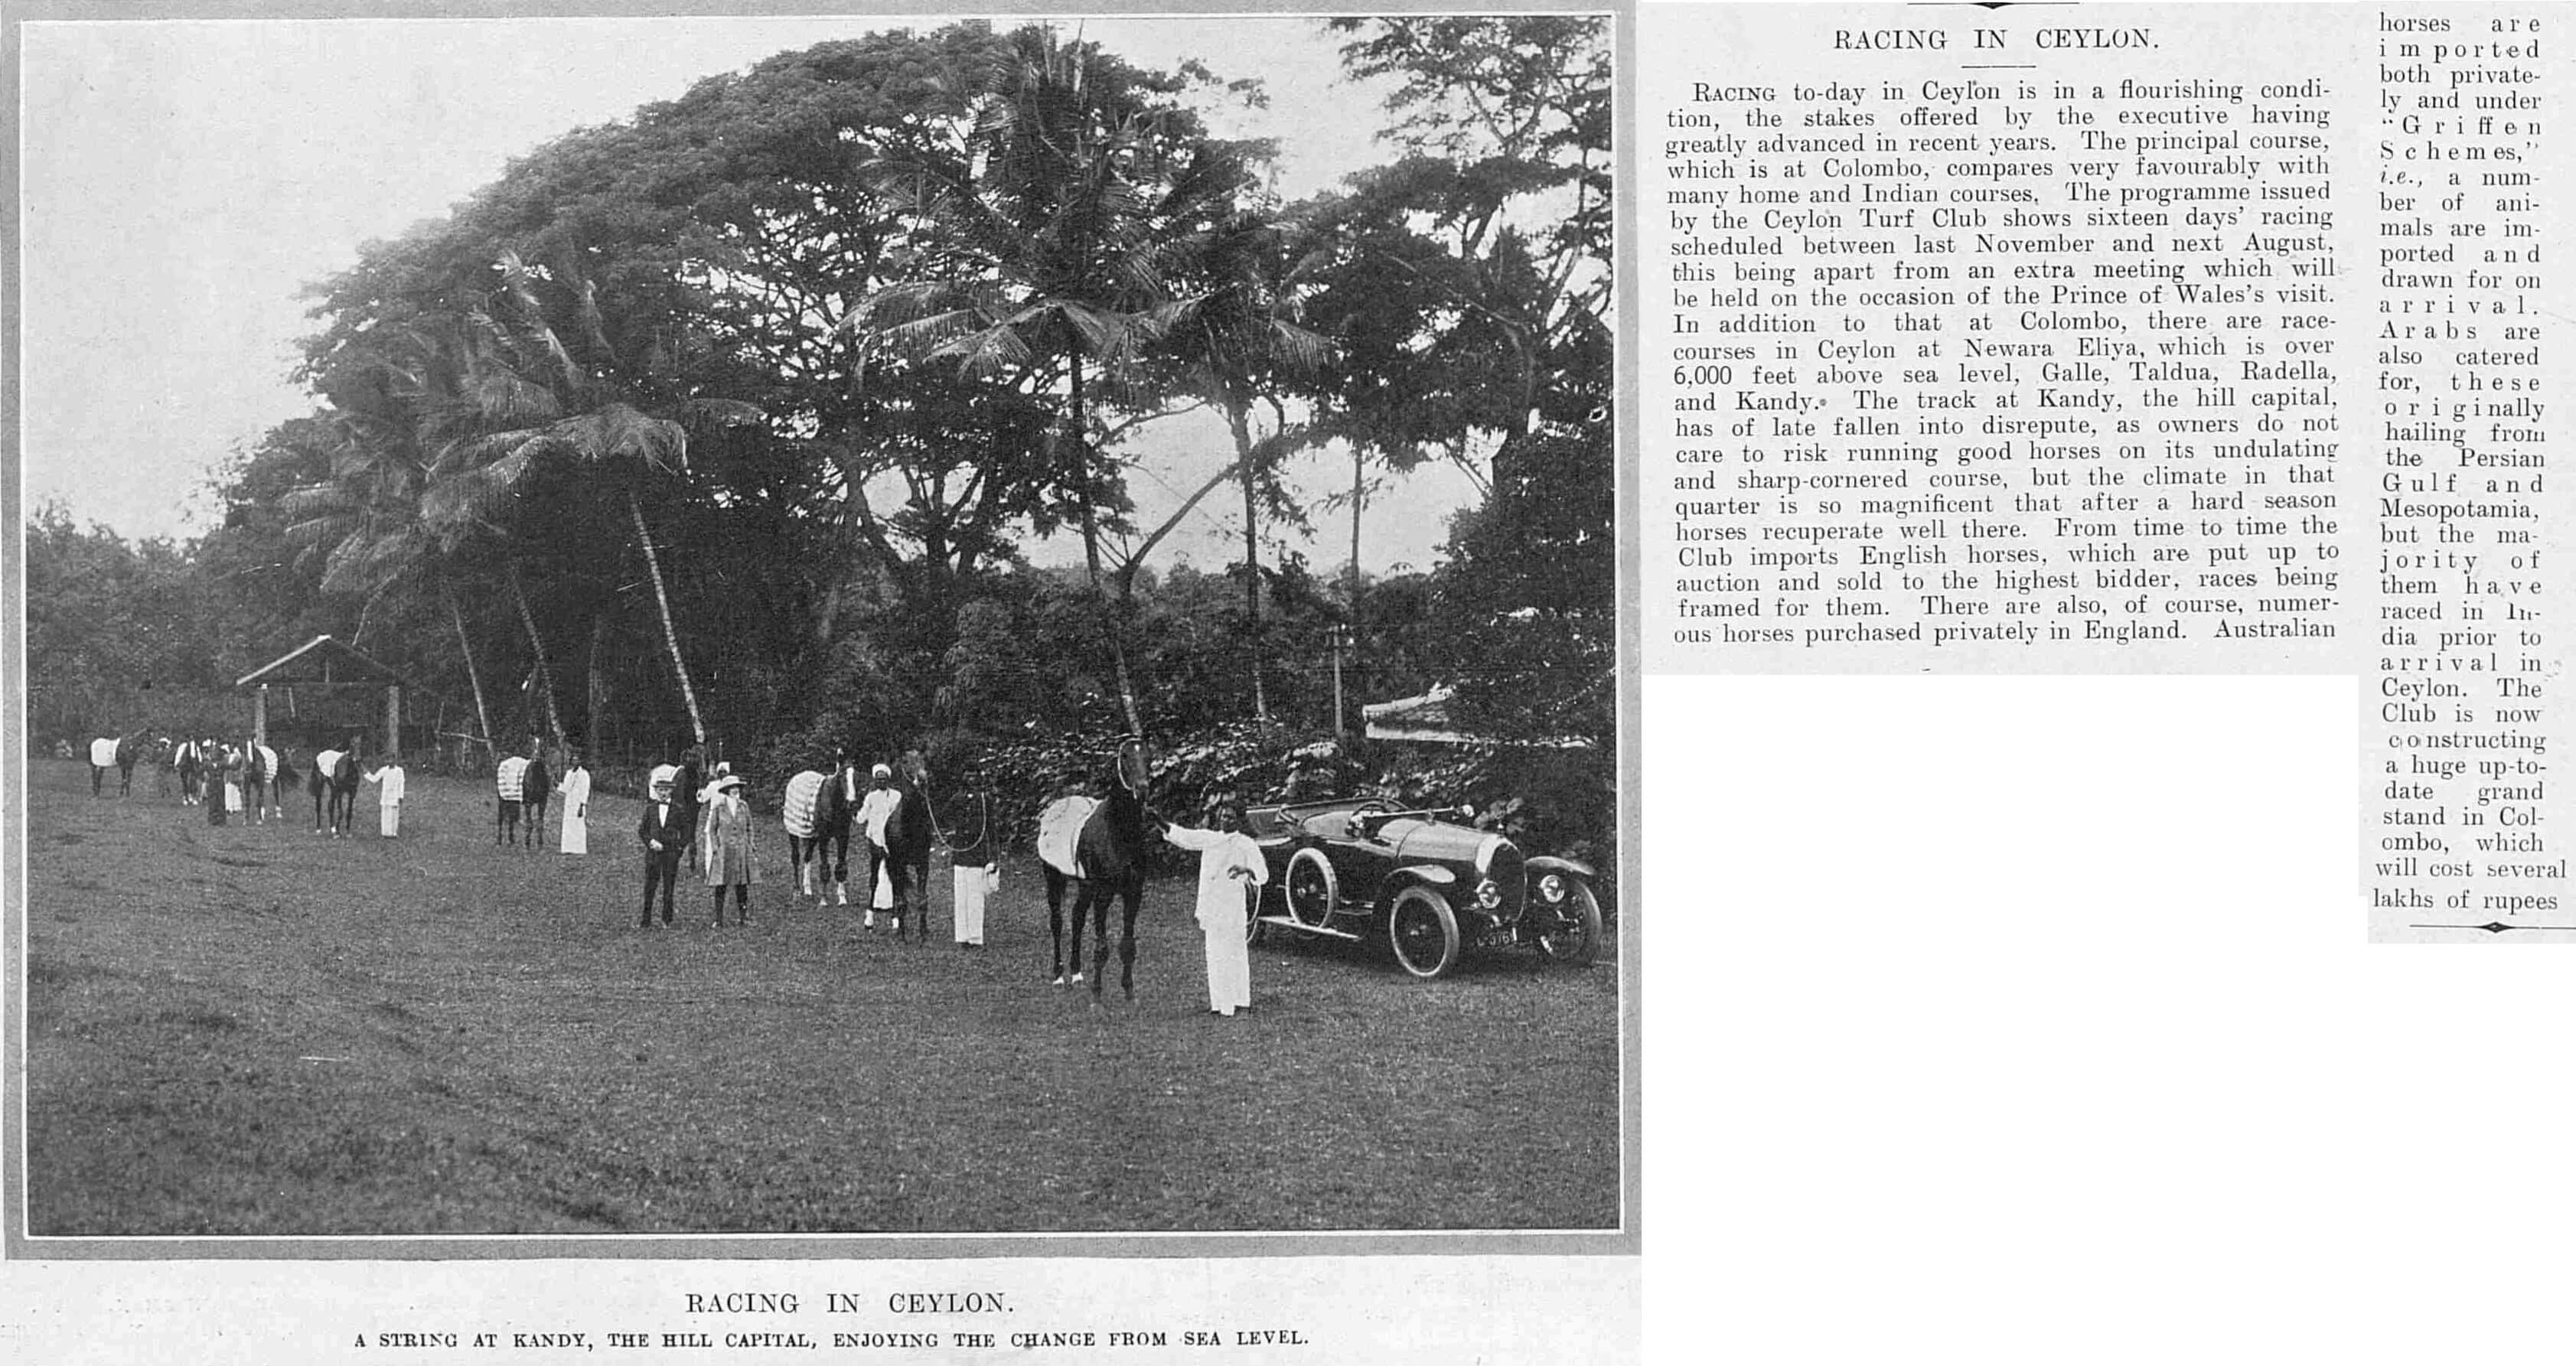 67. Horse Racing in Ceylon 